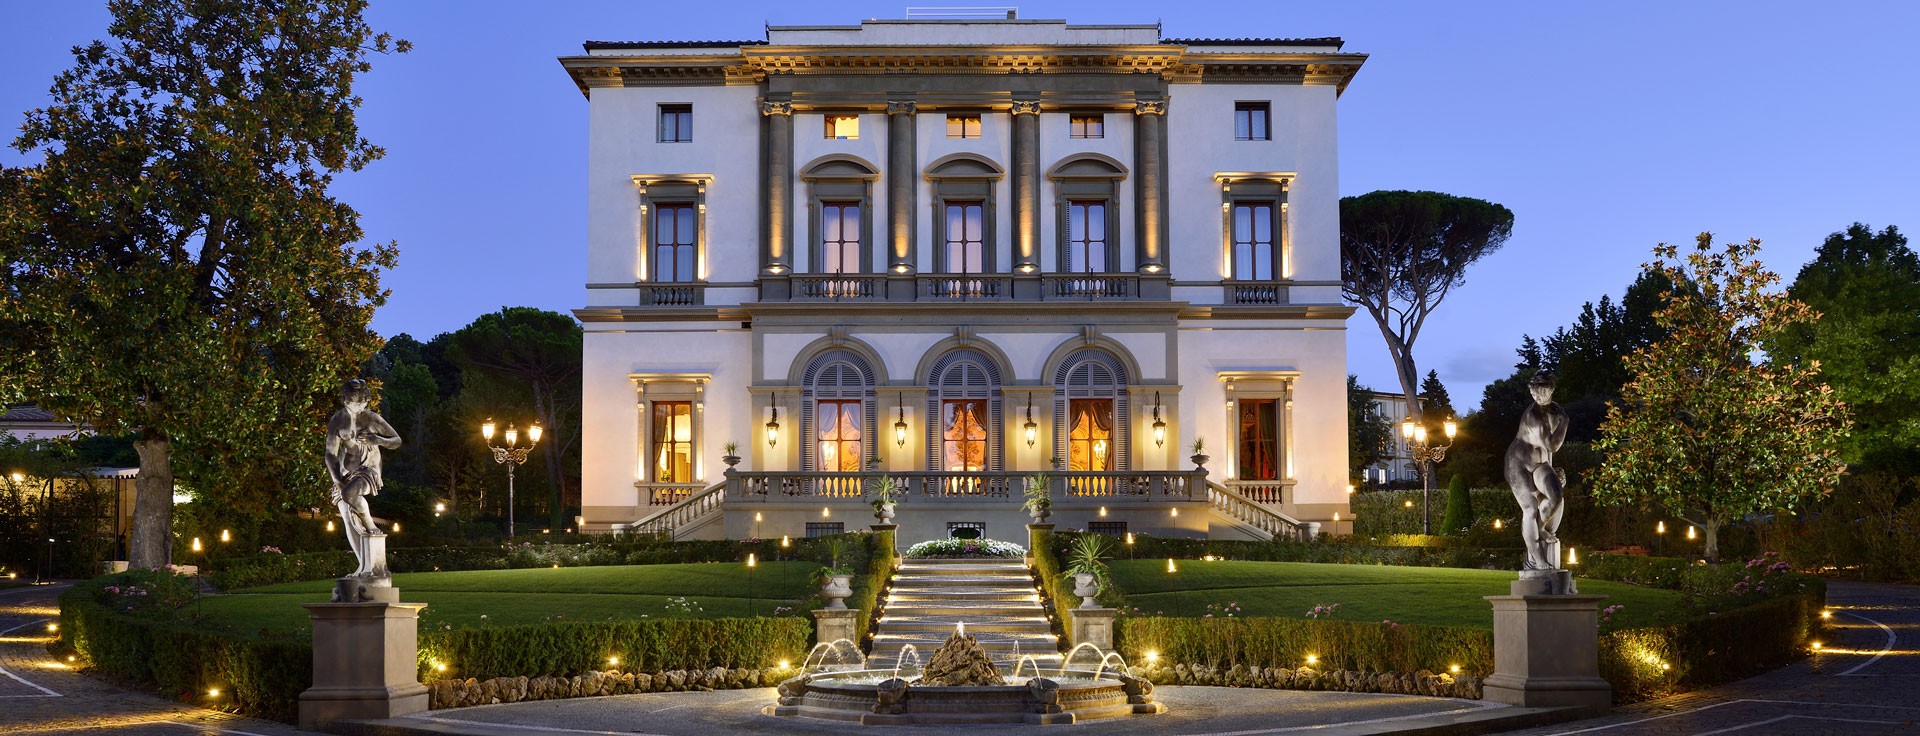 L'Hotel Villa Cora di Firenze dove, il 12 marzo, si terrà la cerimonia d'apertura del DUCO Travel Summit